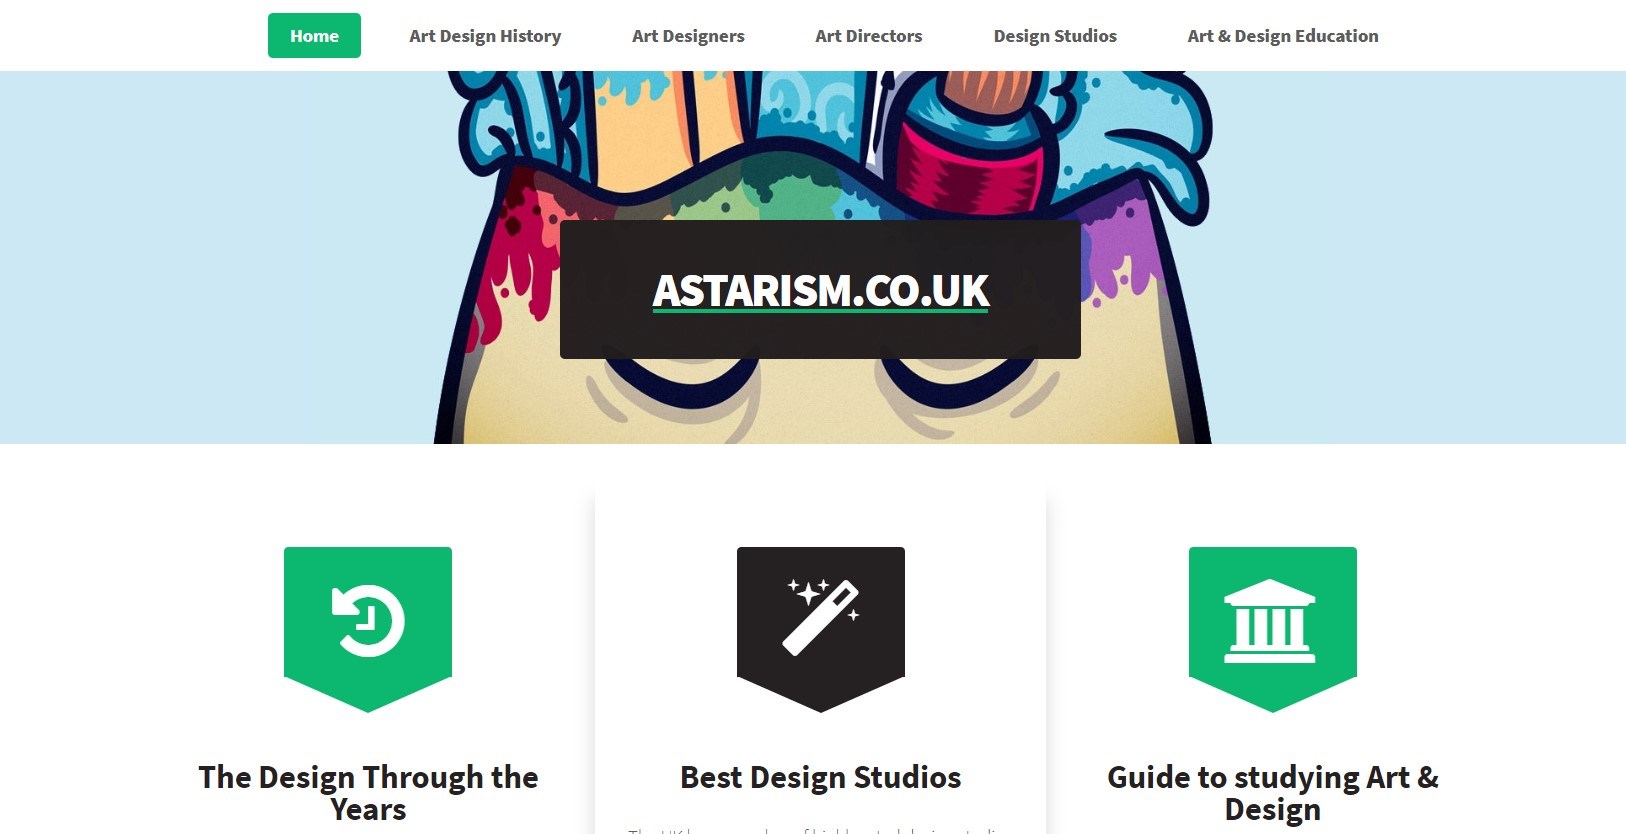 Astarism.co.uk landing page